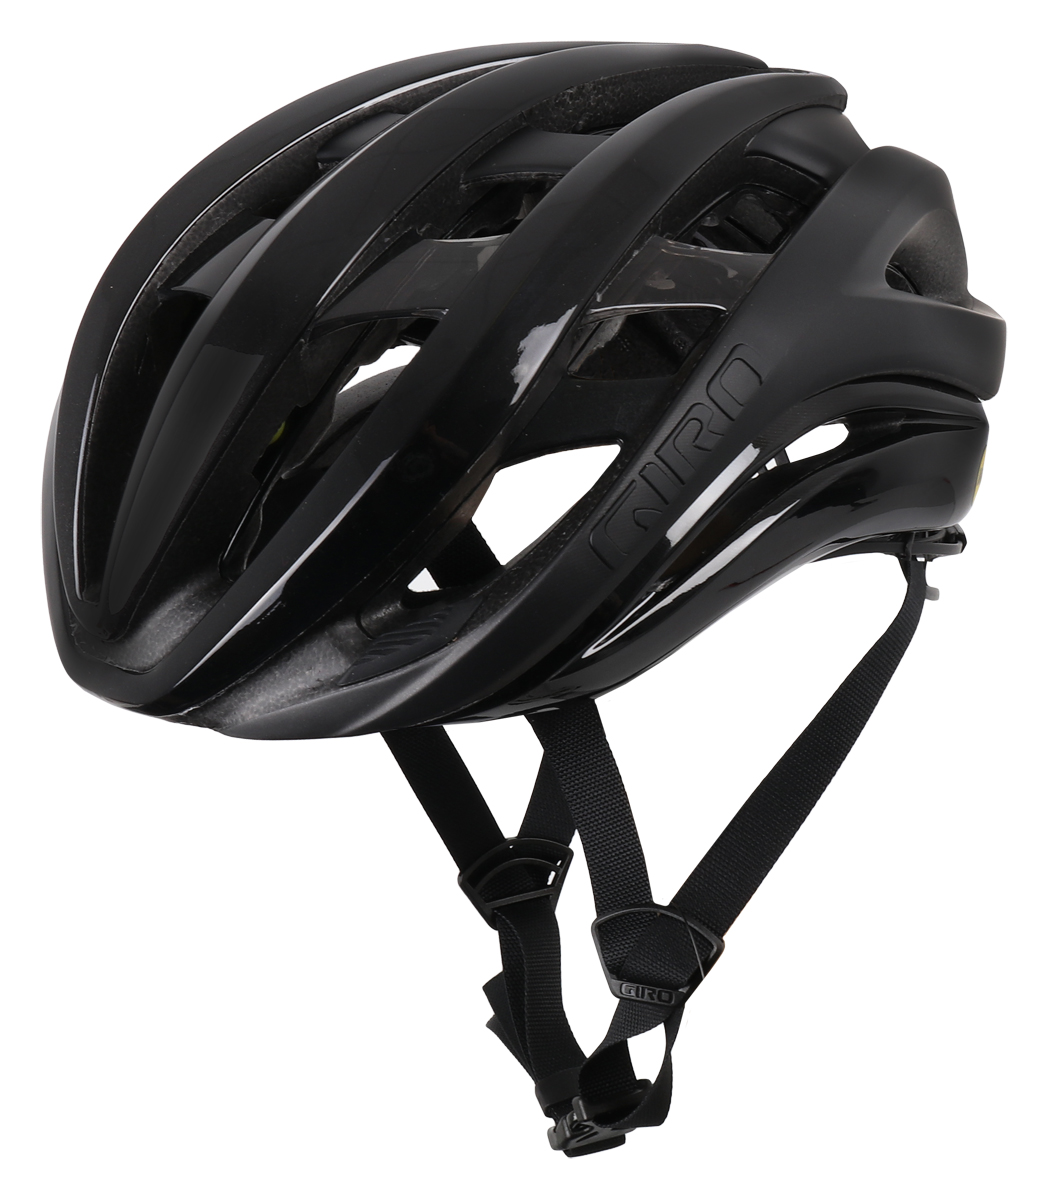 Produktbild von Giro Aether Spherical MIPS Helm - schwarz